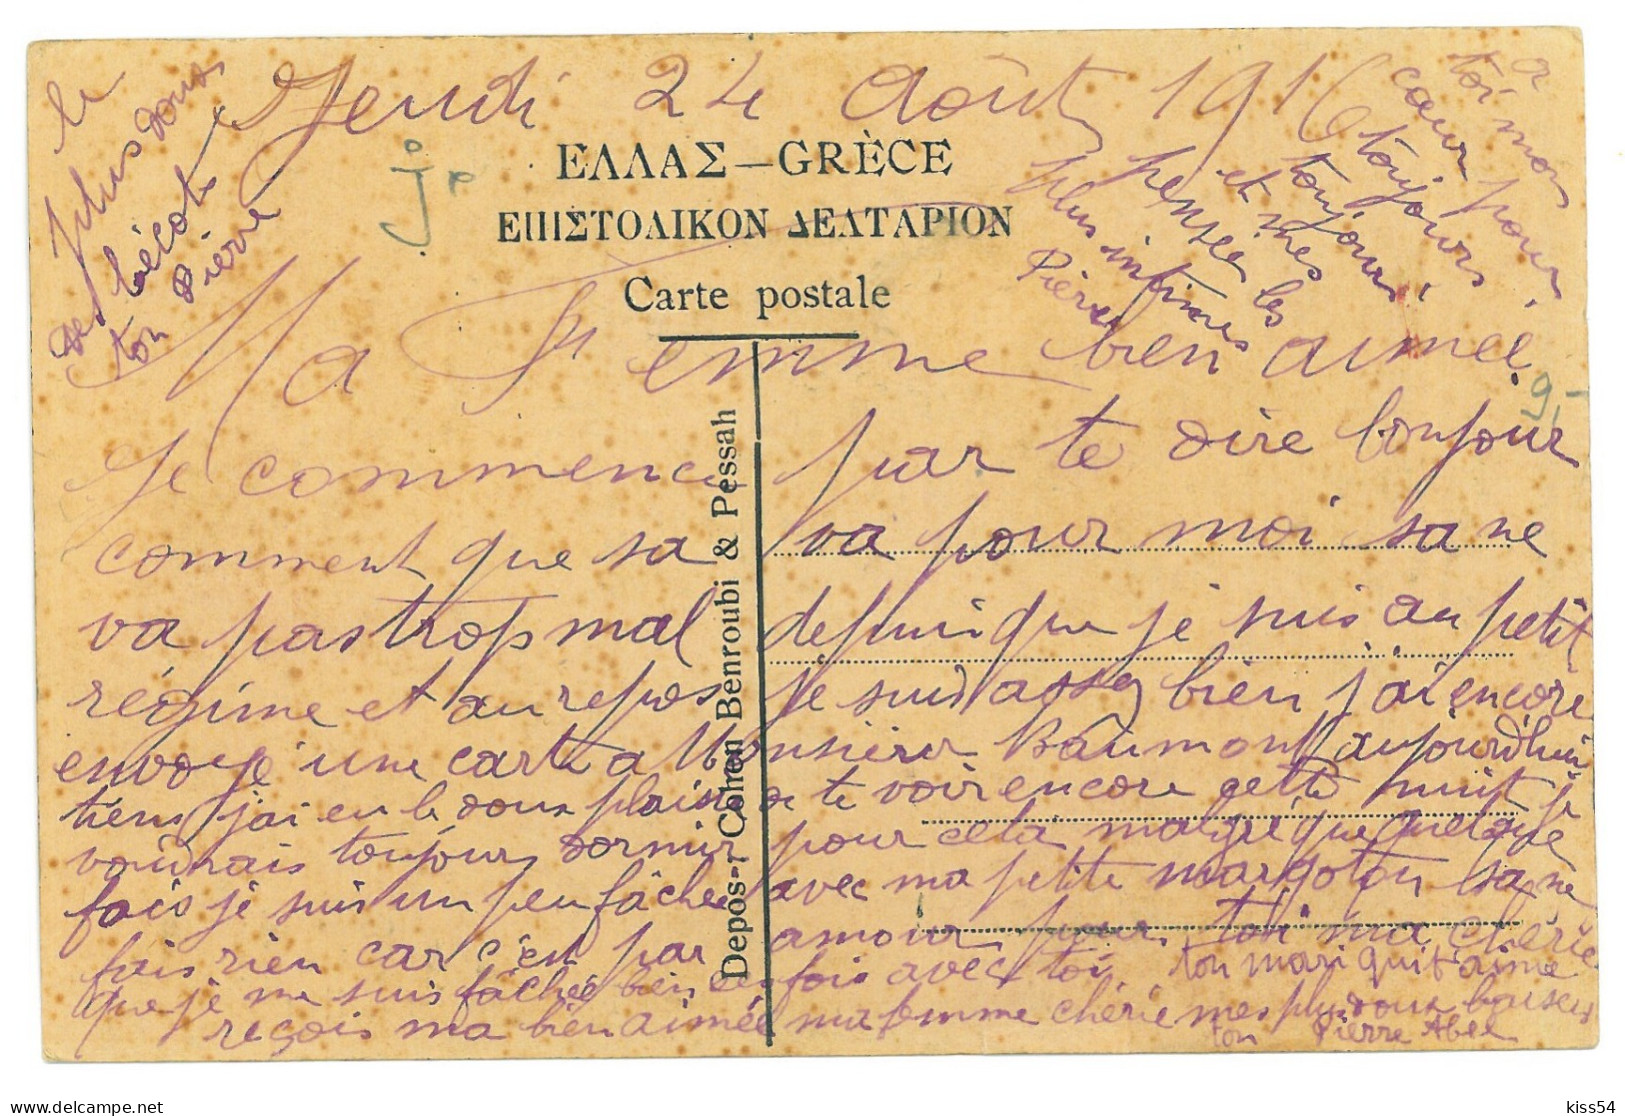 GR 3 - 20544 SALONIQUE, Israelite Women, Greece - Old Postcard - Used - 1916 - Greece